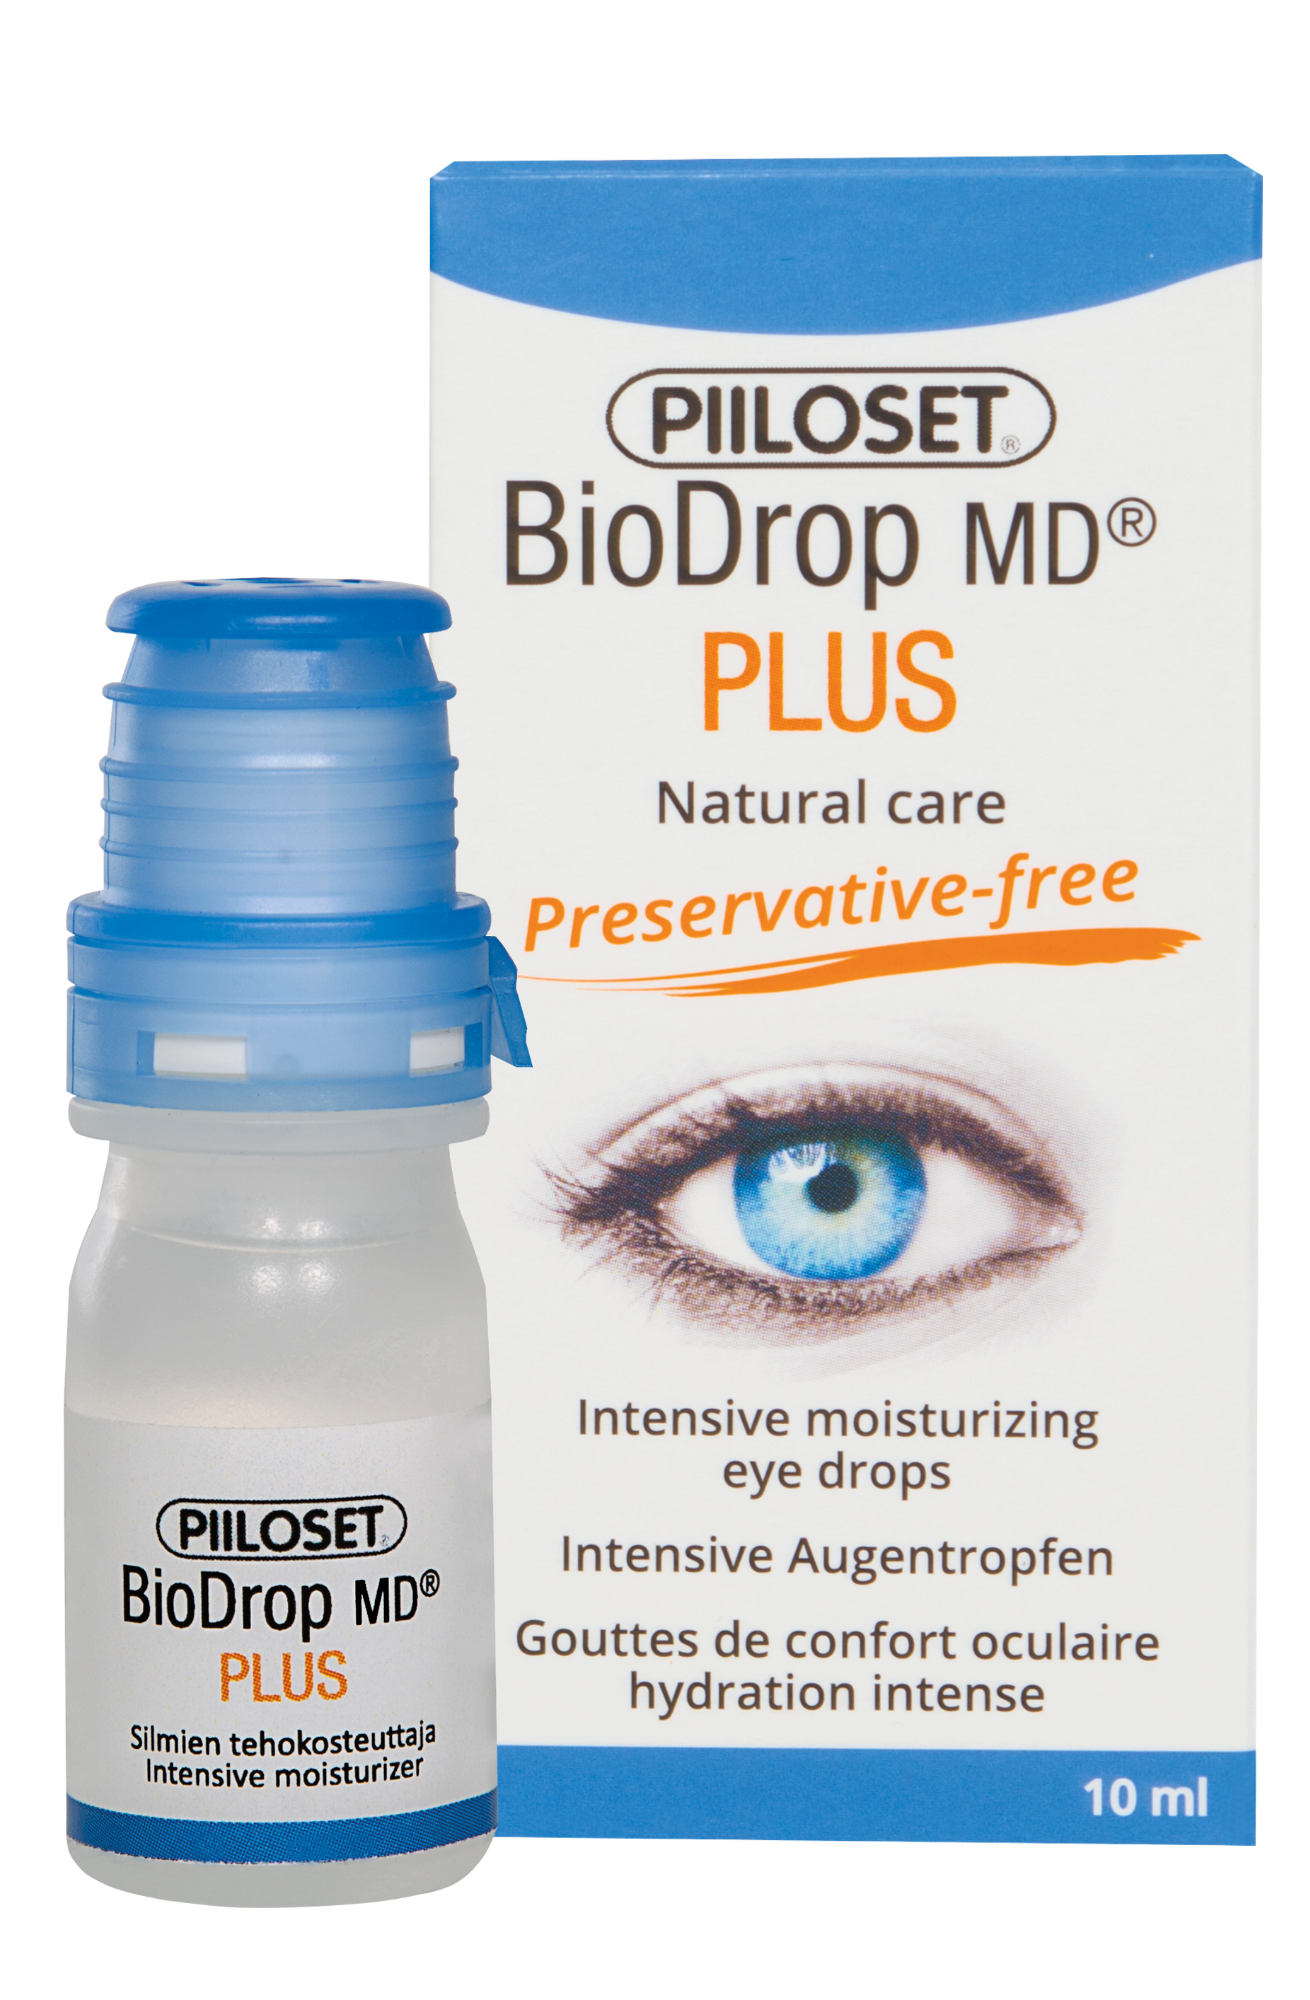 BioDrop MD Plus